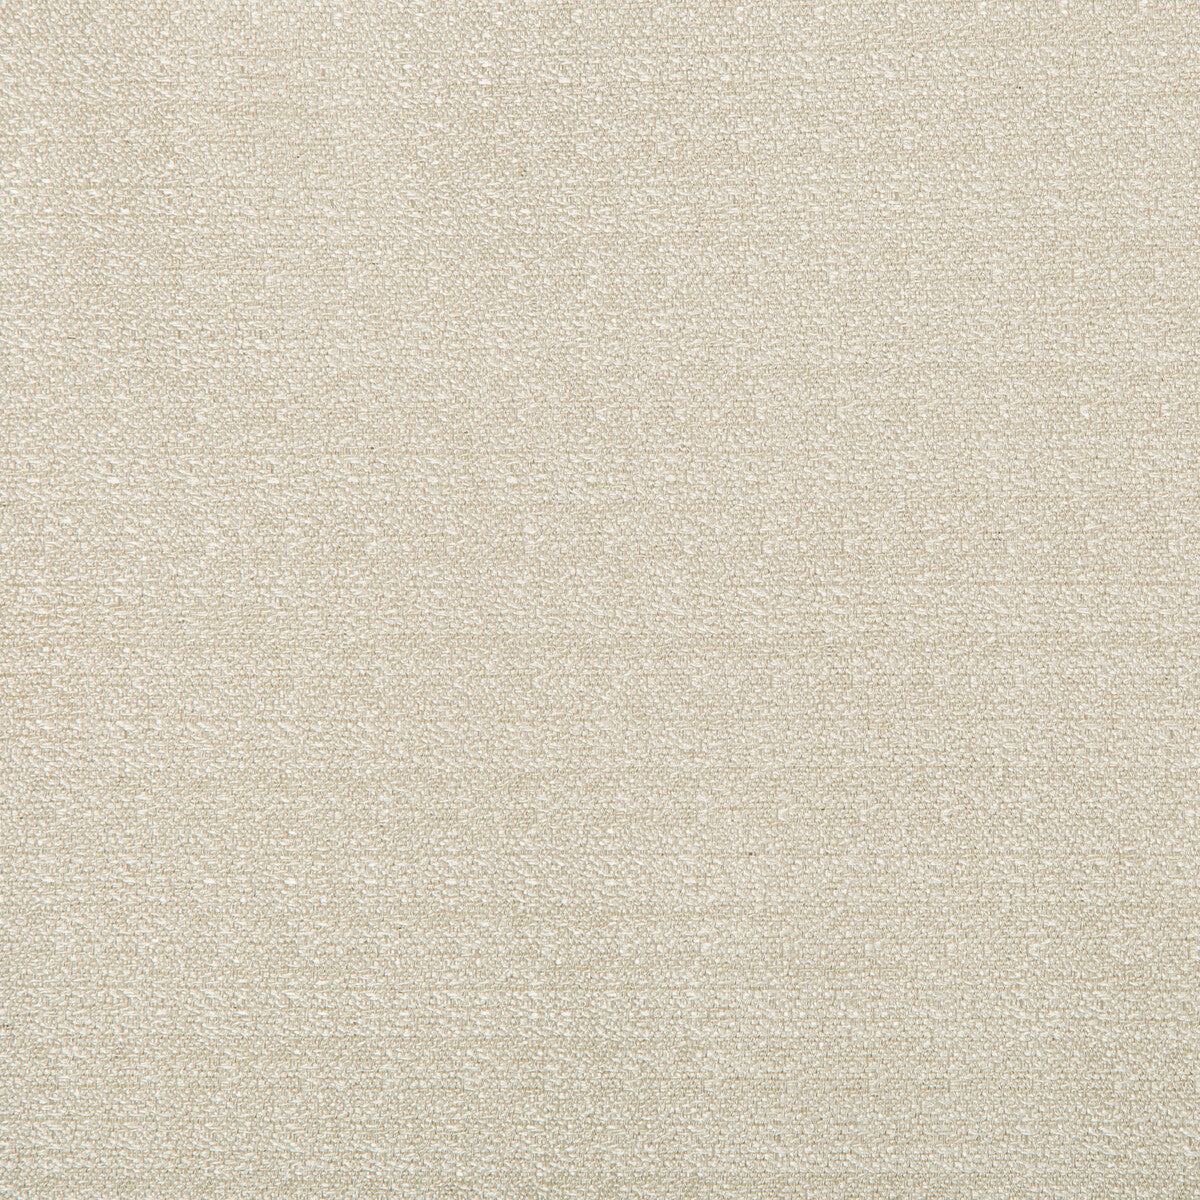 Kravet Basics fabric in 9789-11 color - pattern 9789.11.0 - by Kravet Basics